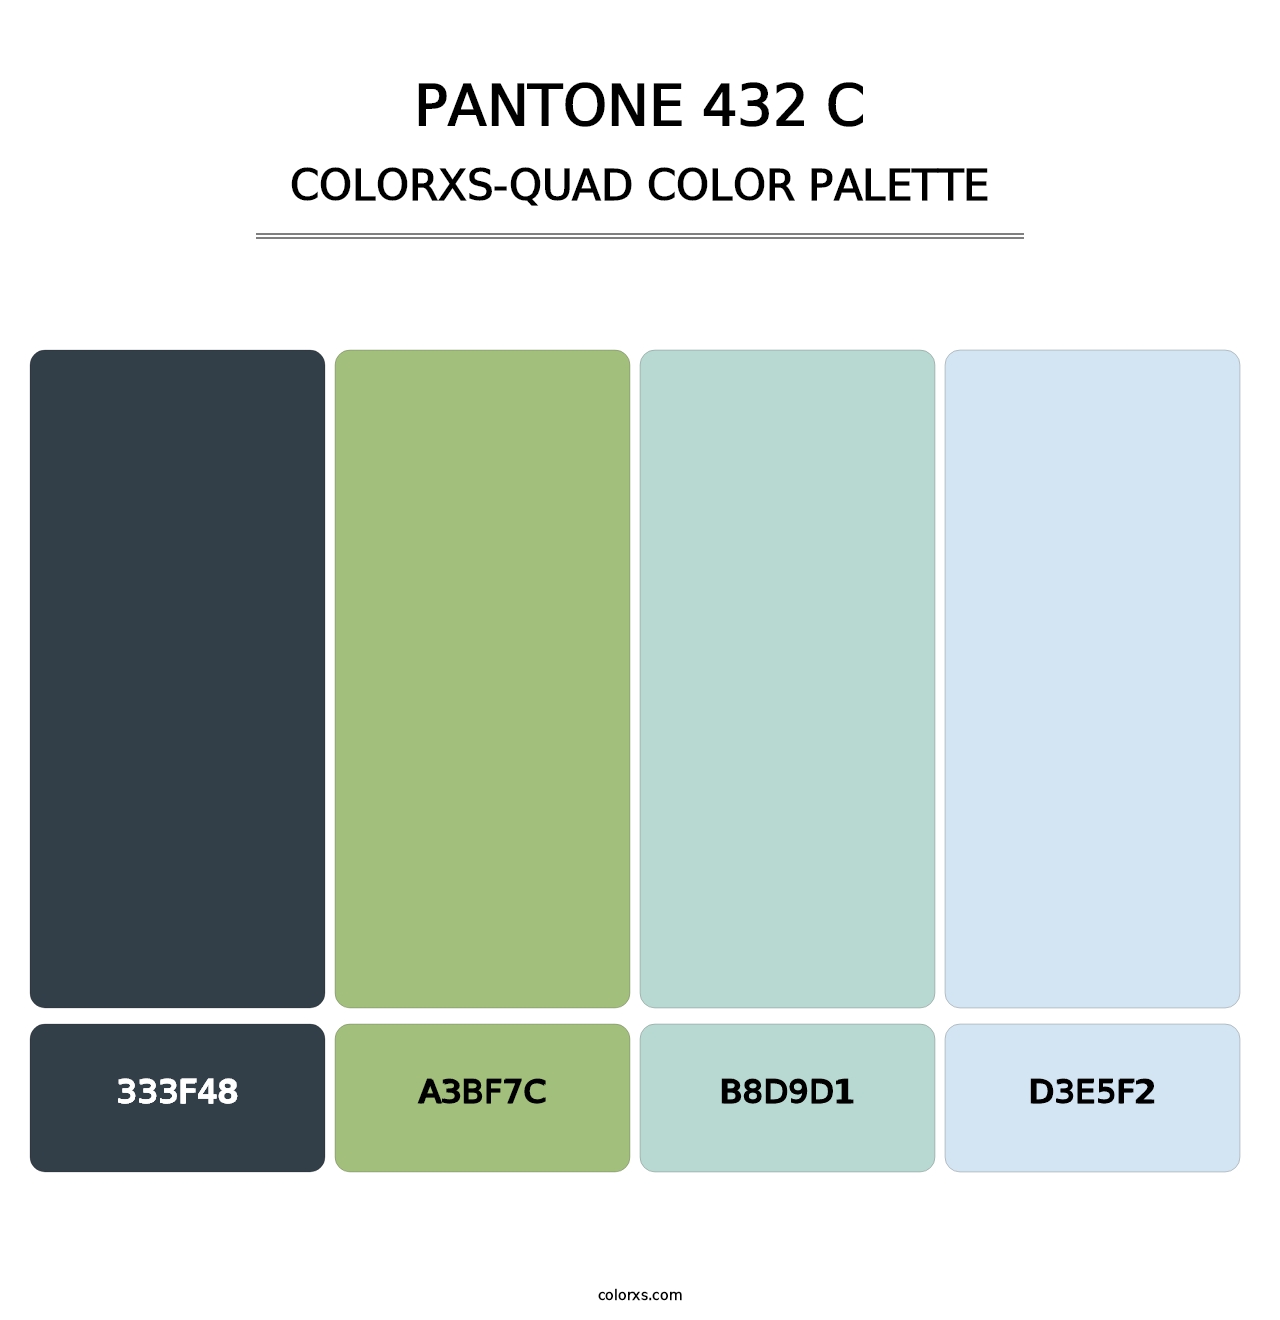 PANTONE 432 C - Colorxs Quad Palette